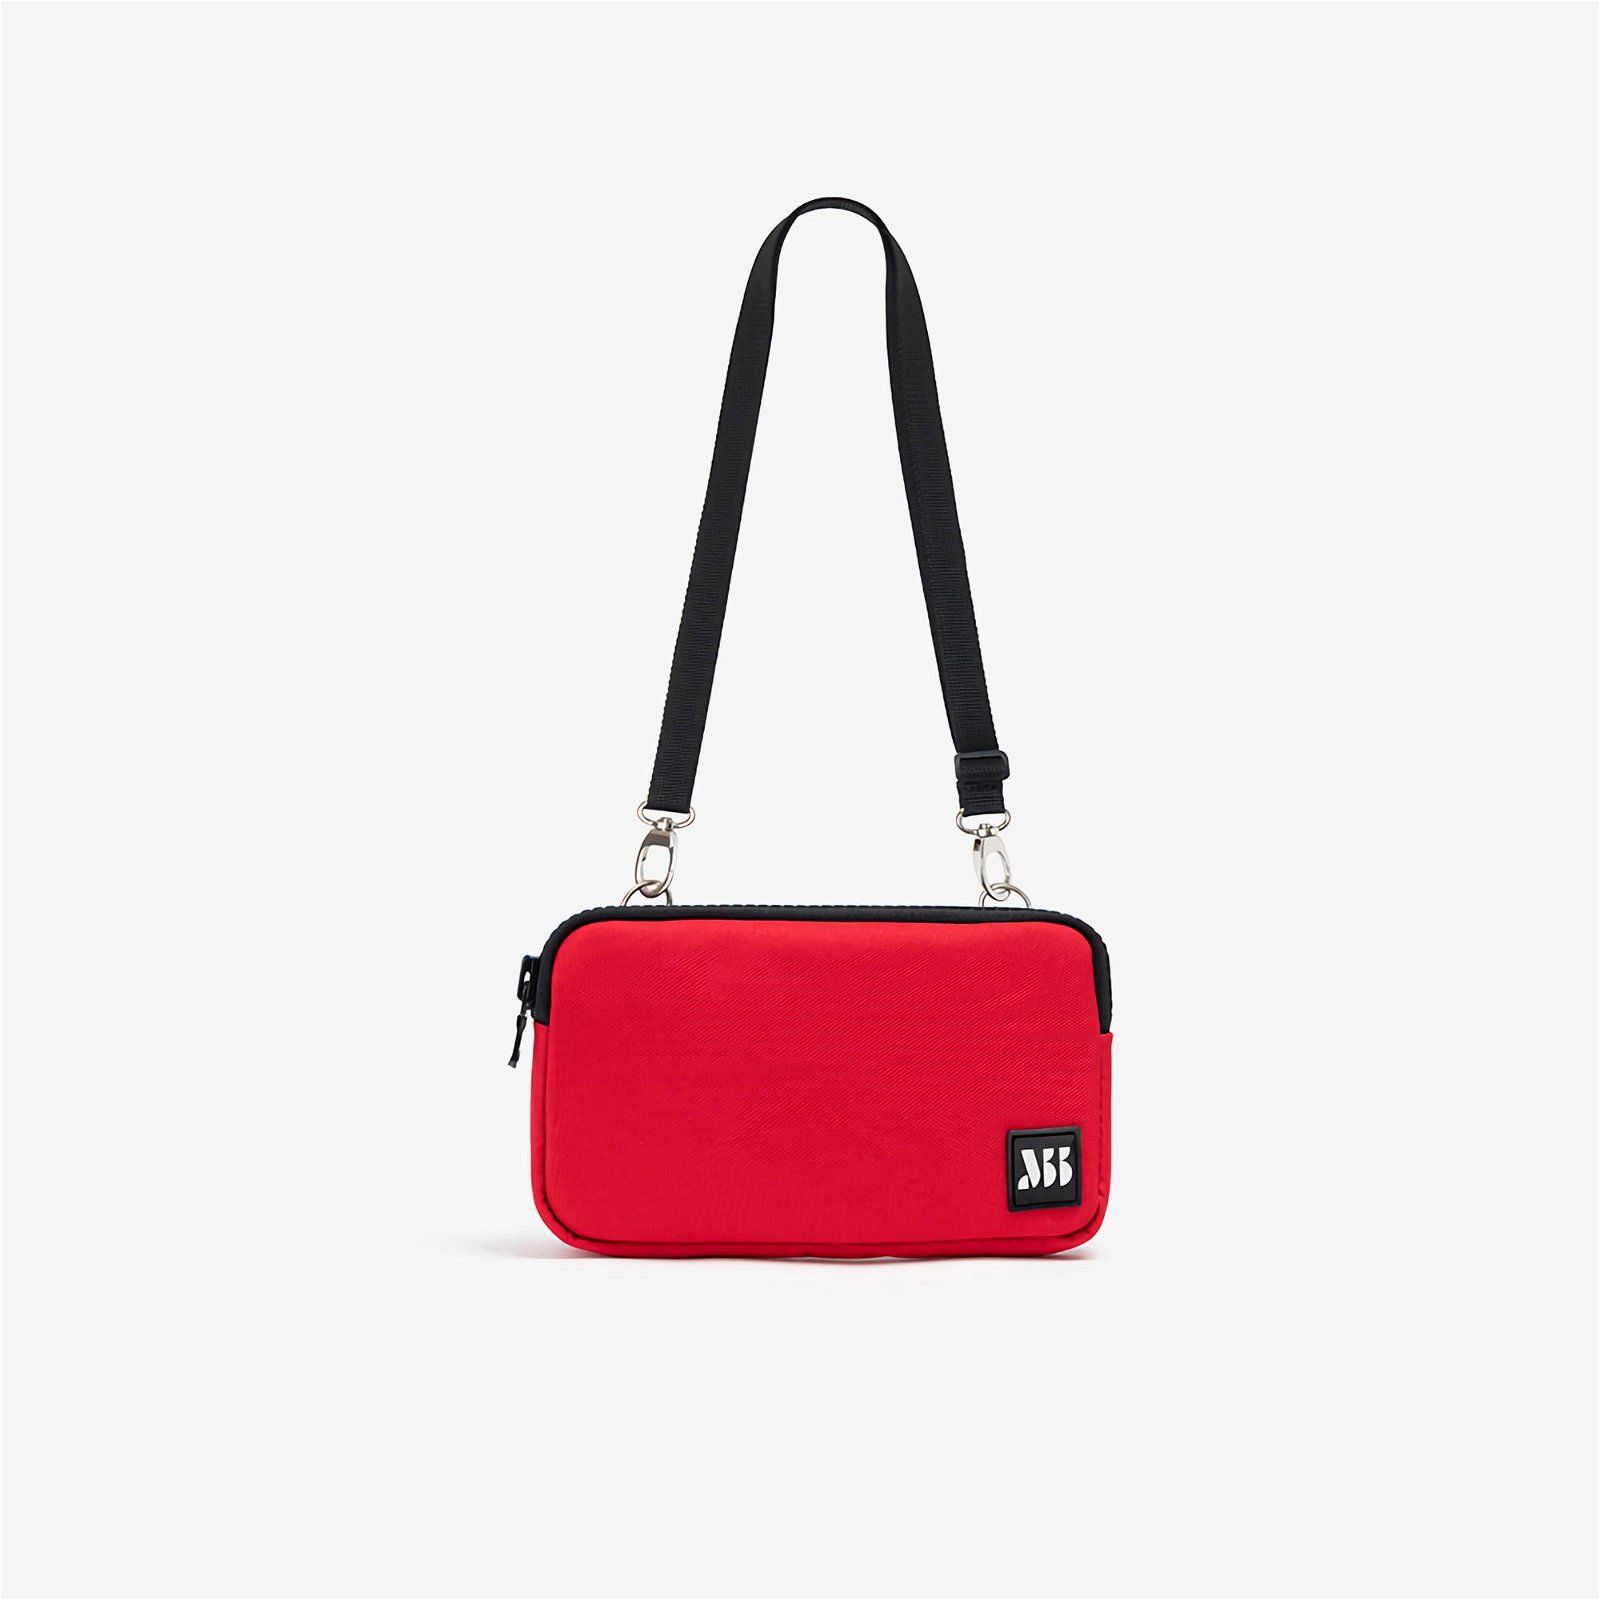 MuniBum Bag Chili Red Phone Bag